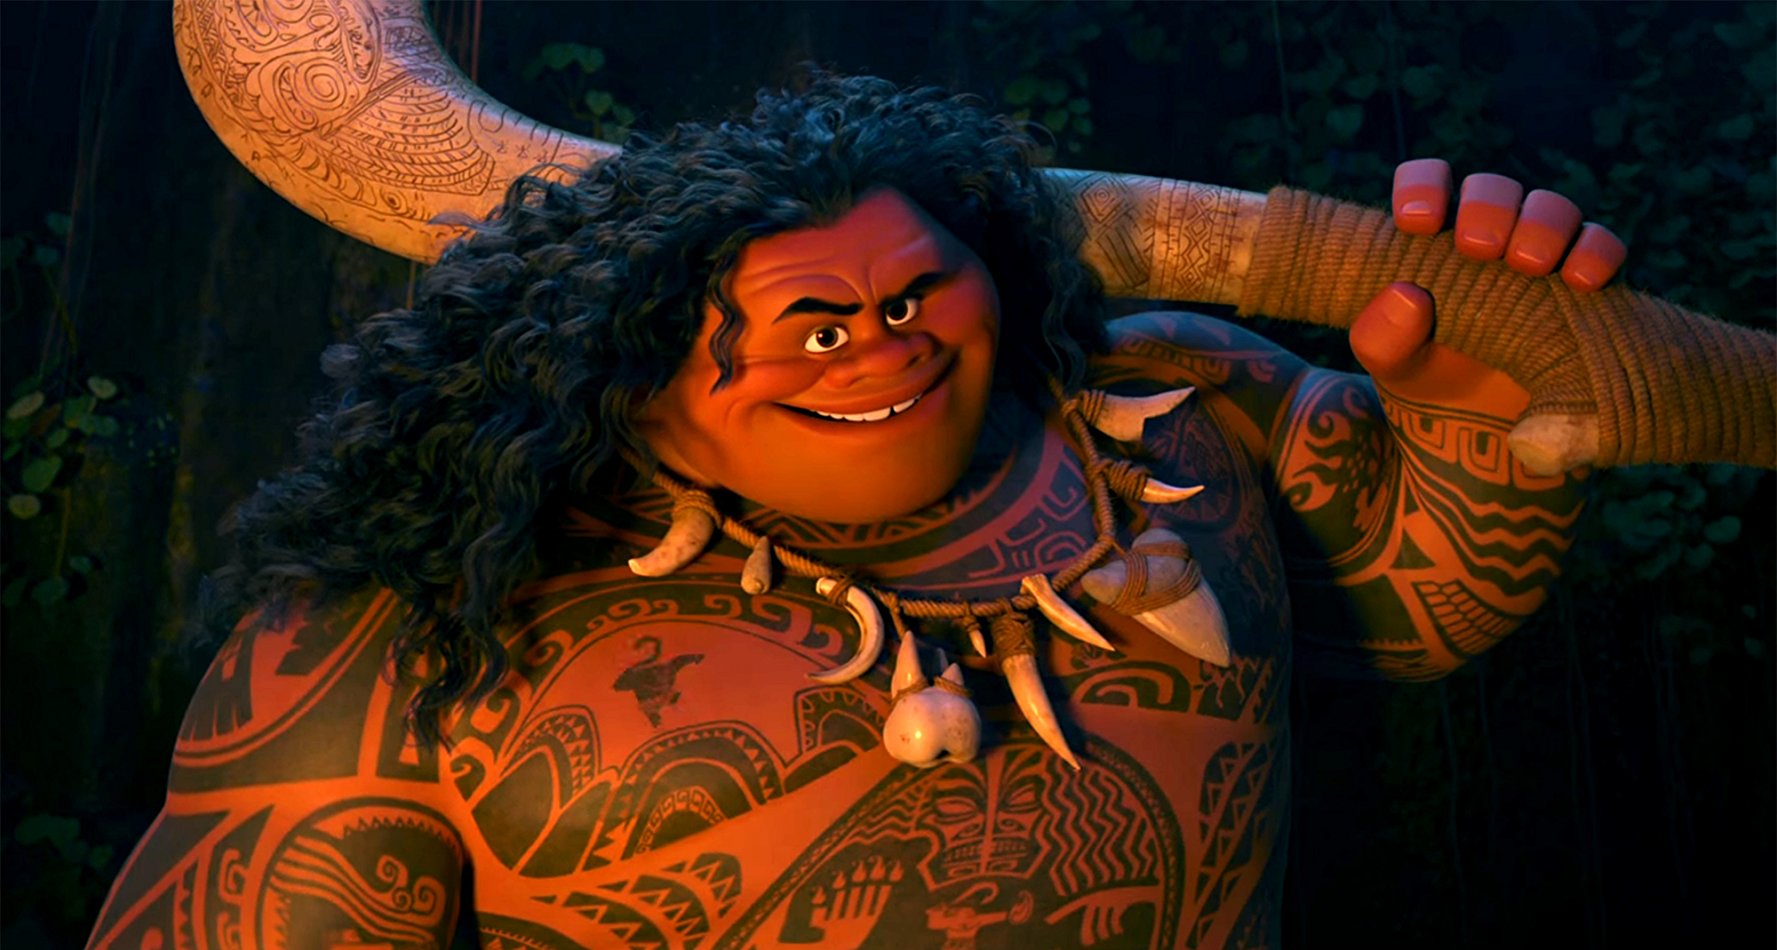 <p>La Roca tiene ascendencia samoana por parte de su madre. Este hecho le valió el papel de Maui en el clásico animado de Disney Moana. Además, el rey de Samoa, le otorgó el título de Seiuli, equivalente a un caballero.</p>